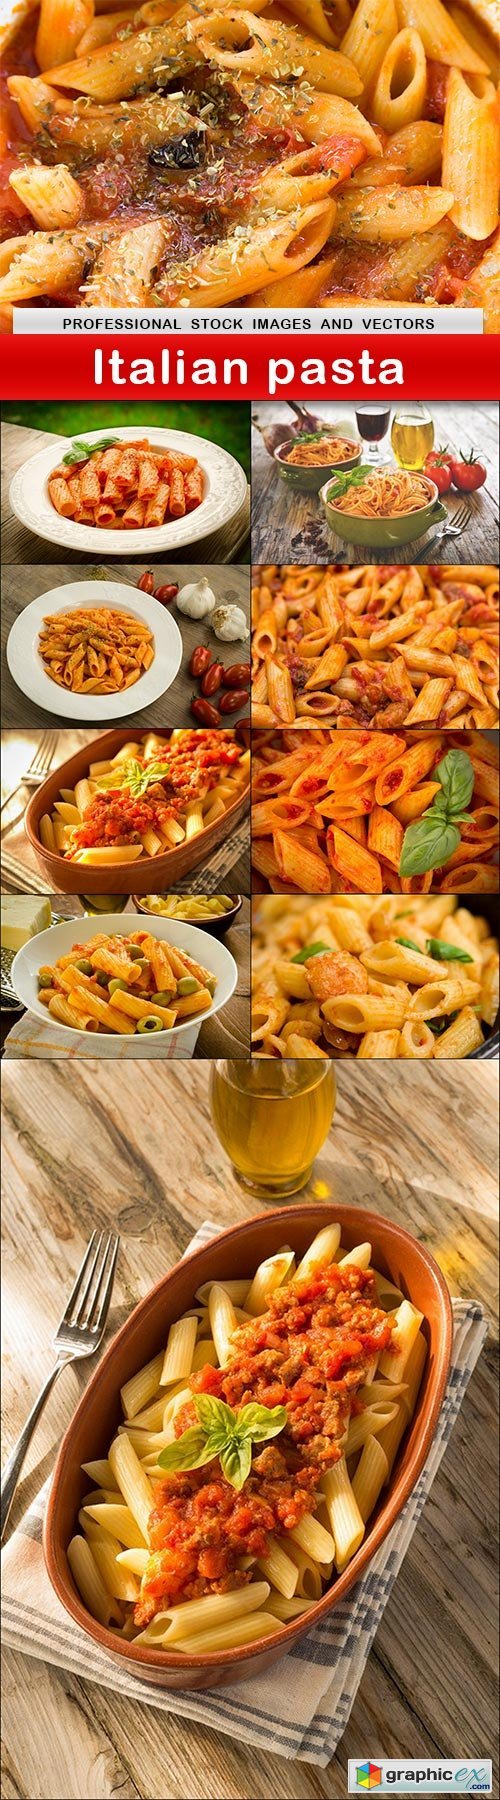 Italian pasta - 10 UHQ JPEG